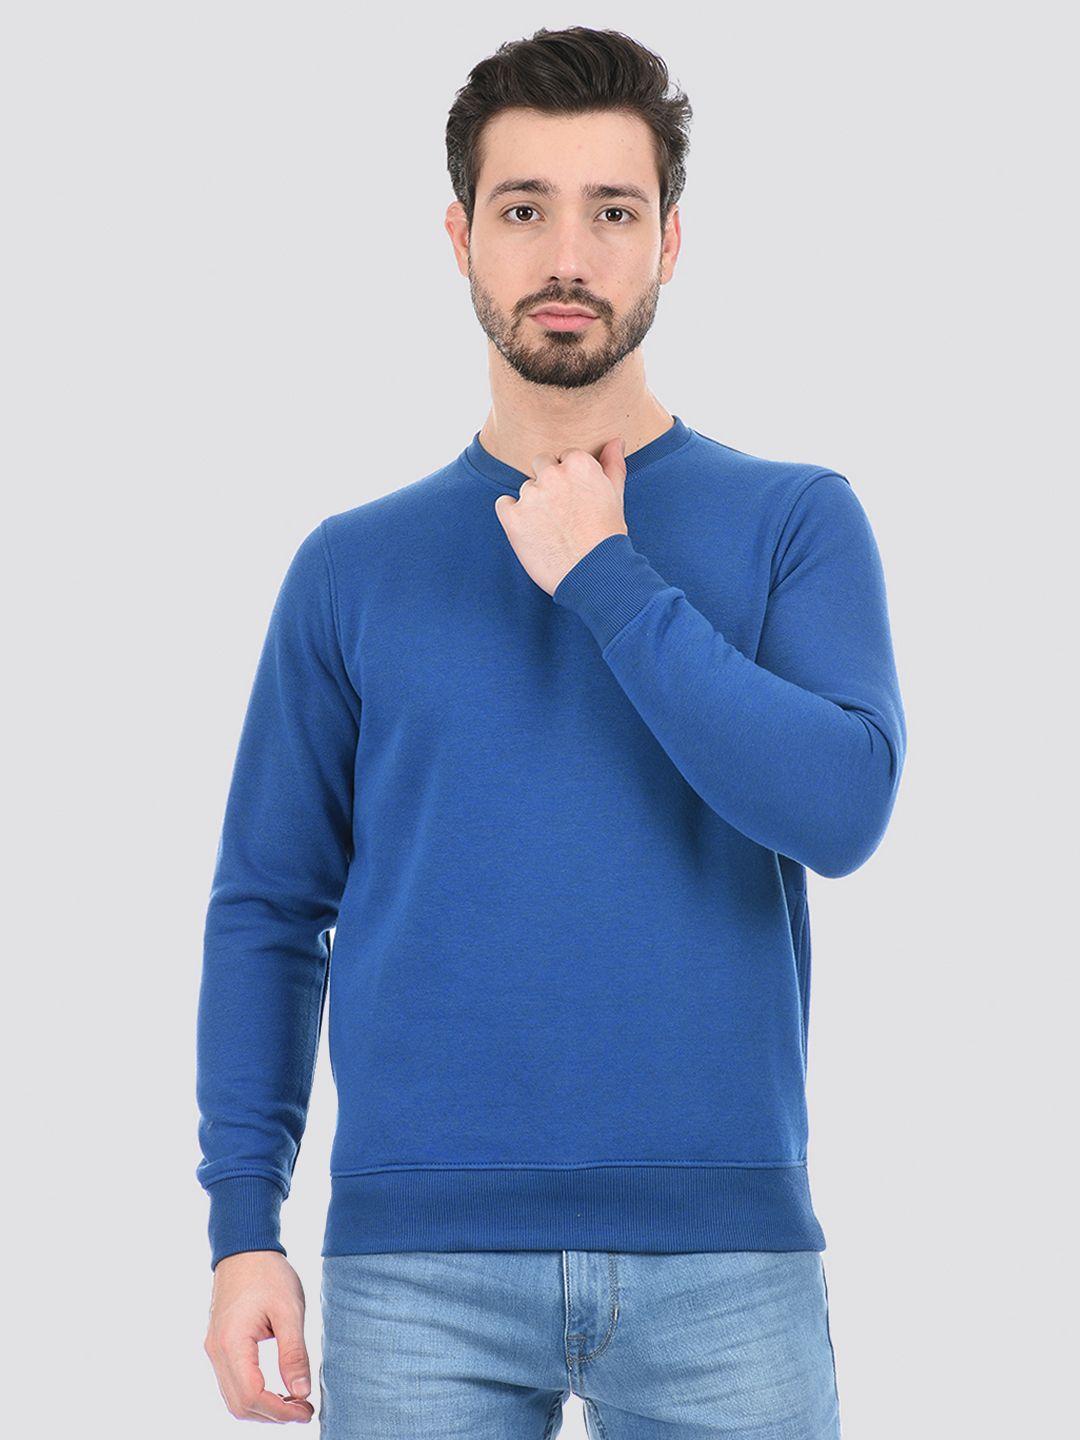 cloak & decker by monte carlo men blue sweatshirt